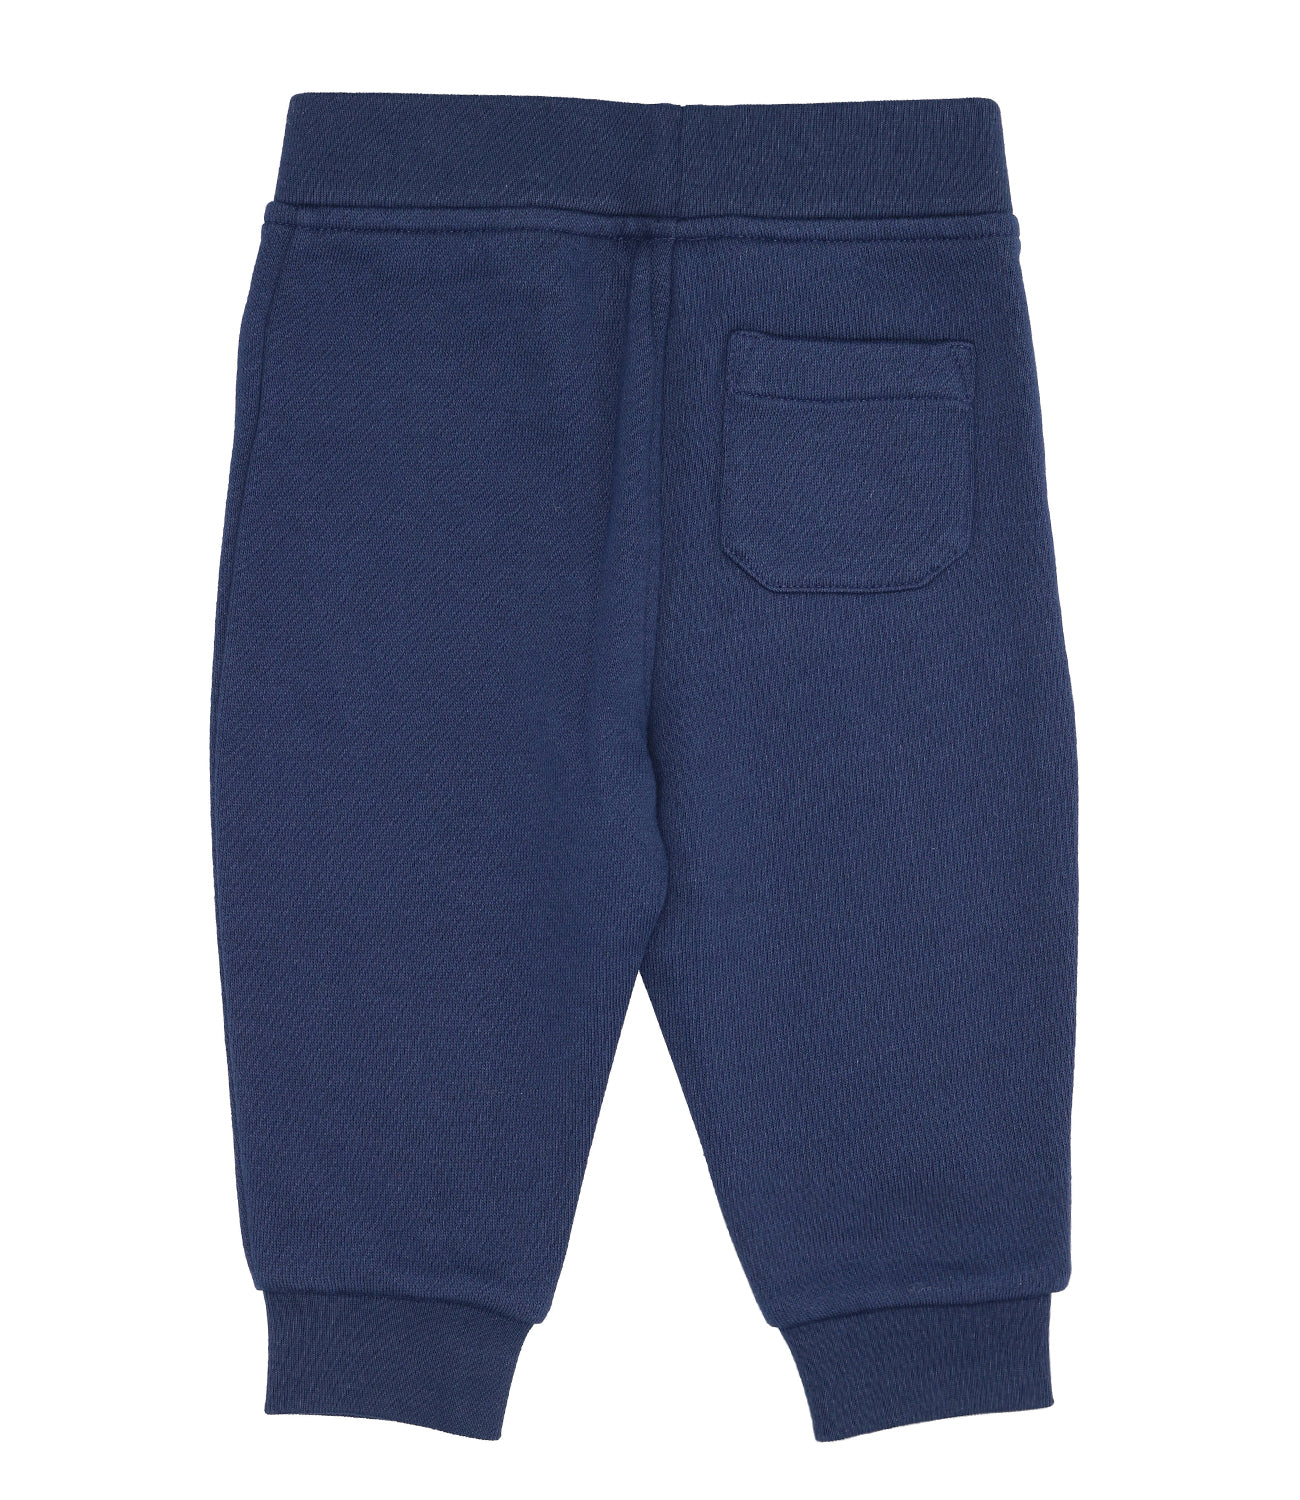 Navy Blue Sporty Pants